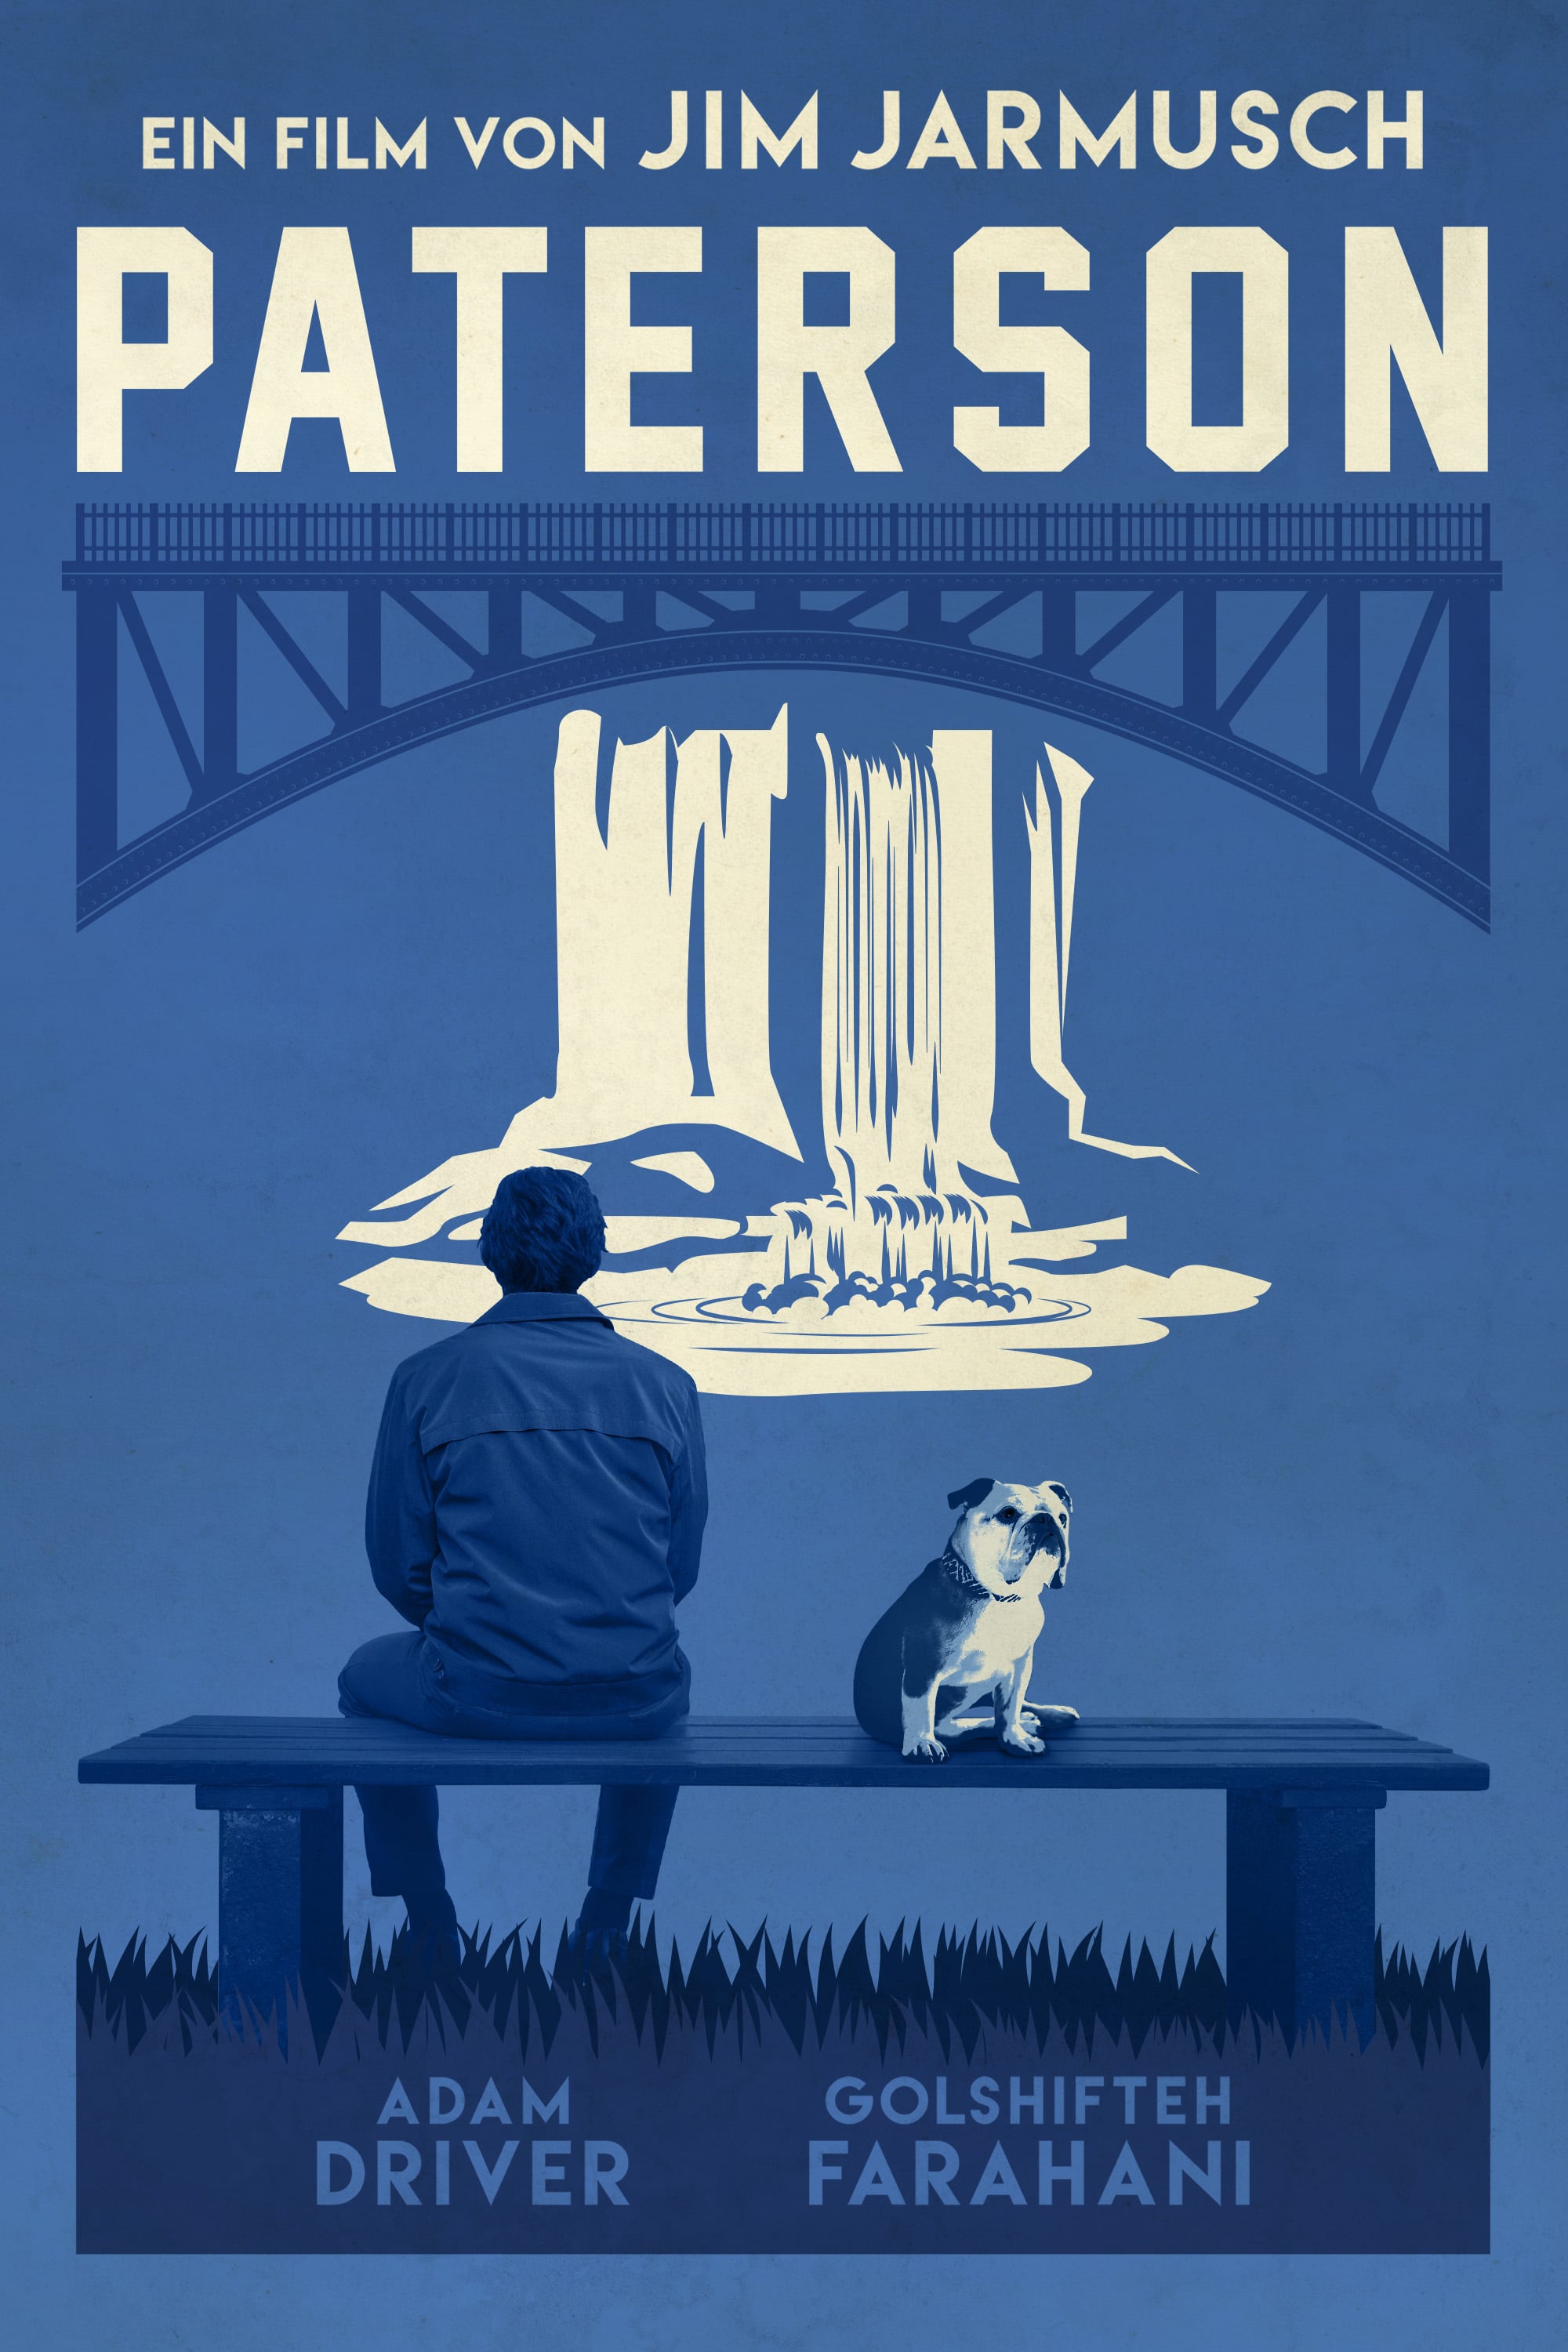 Plakat von "Paterson"